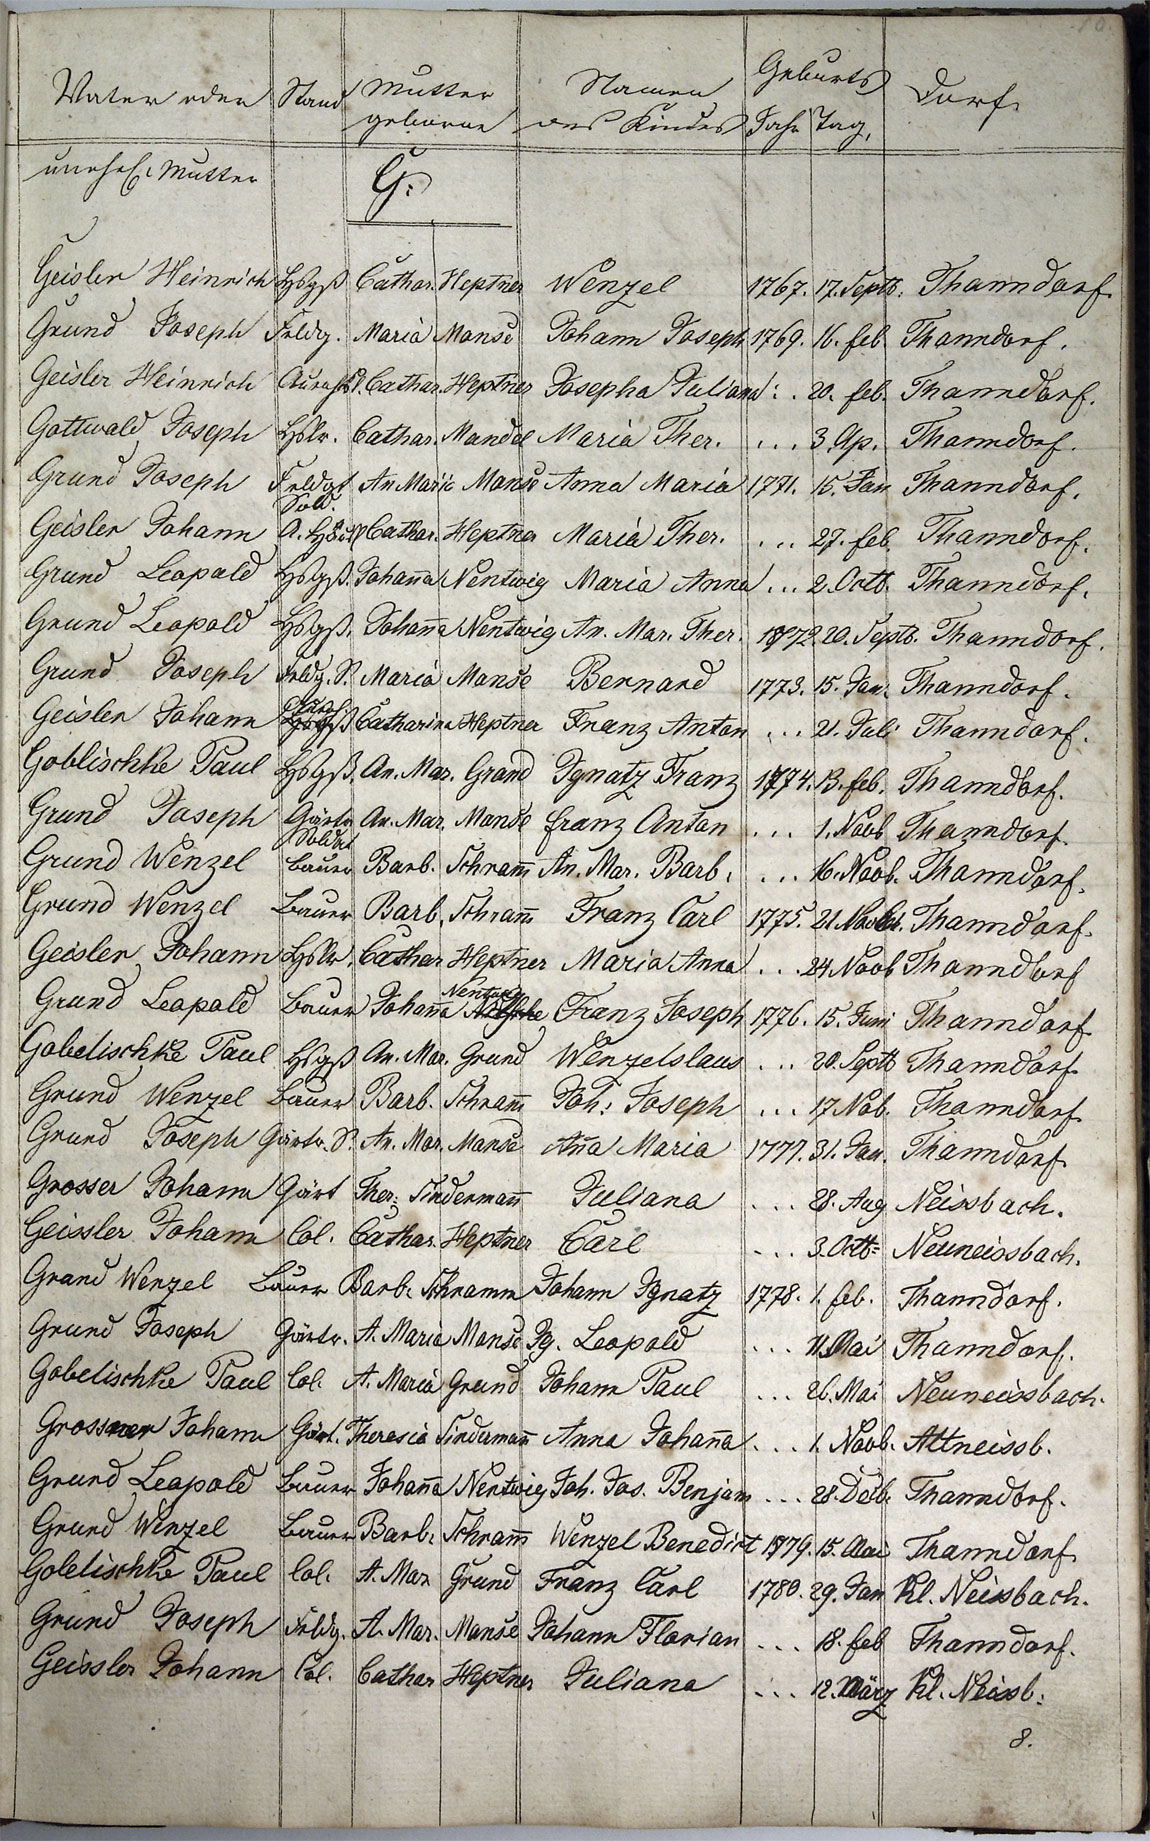 Taufregister 1770 - 1889 Seite 35